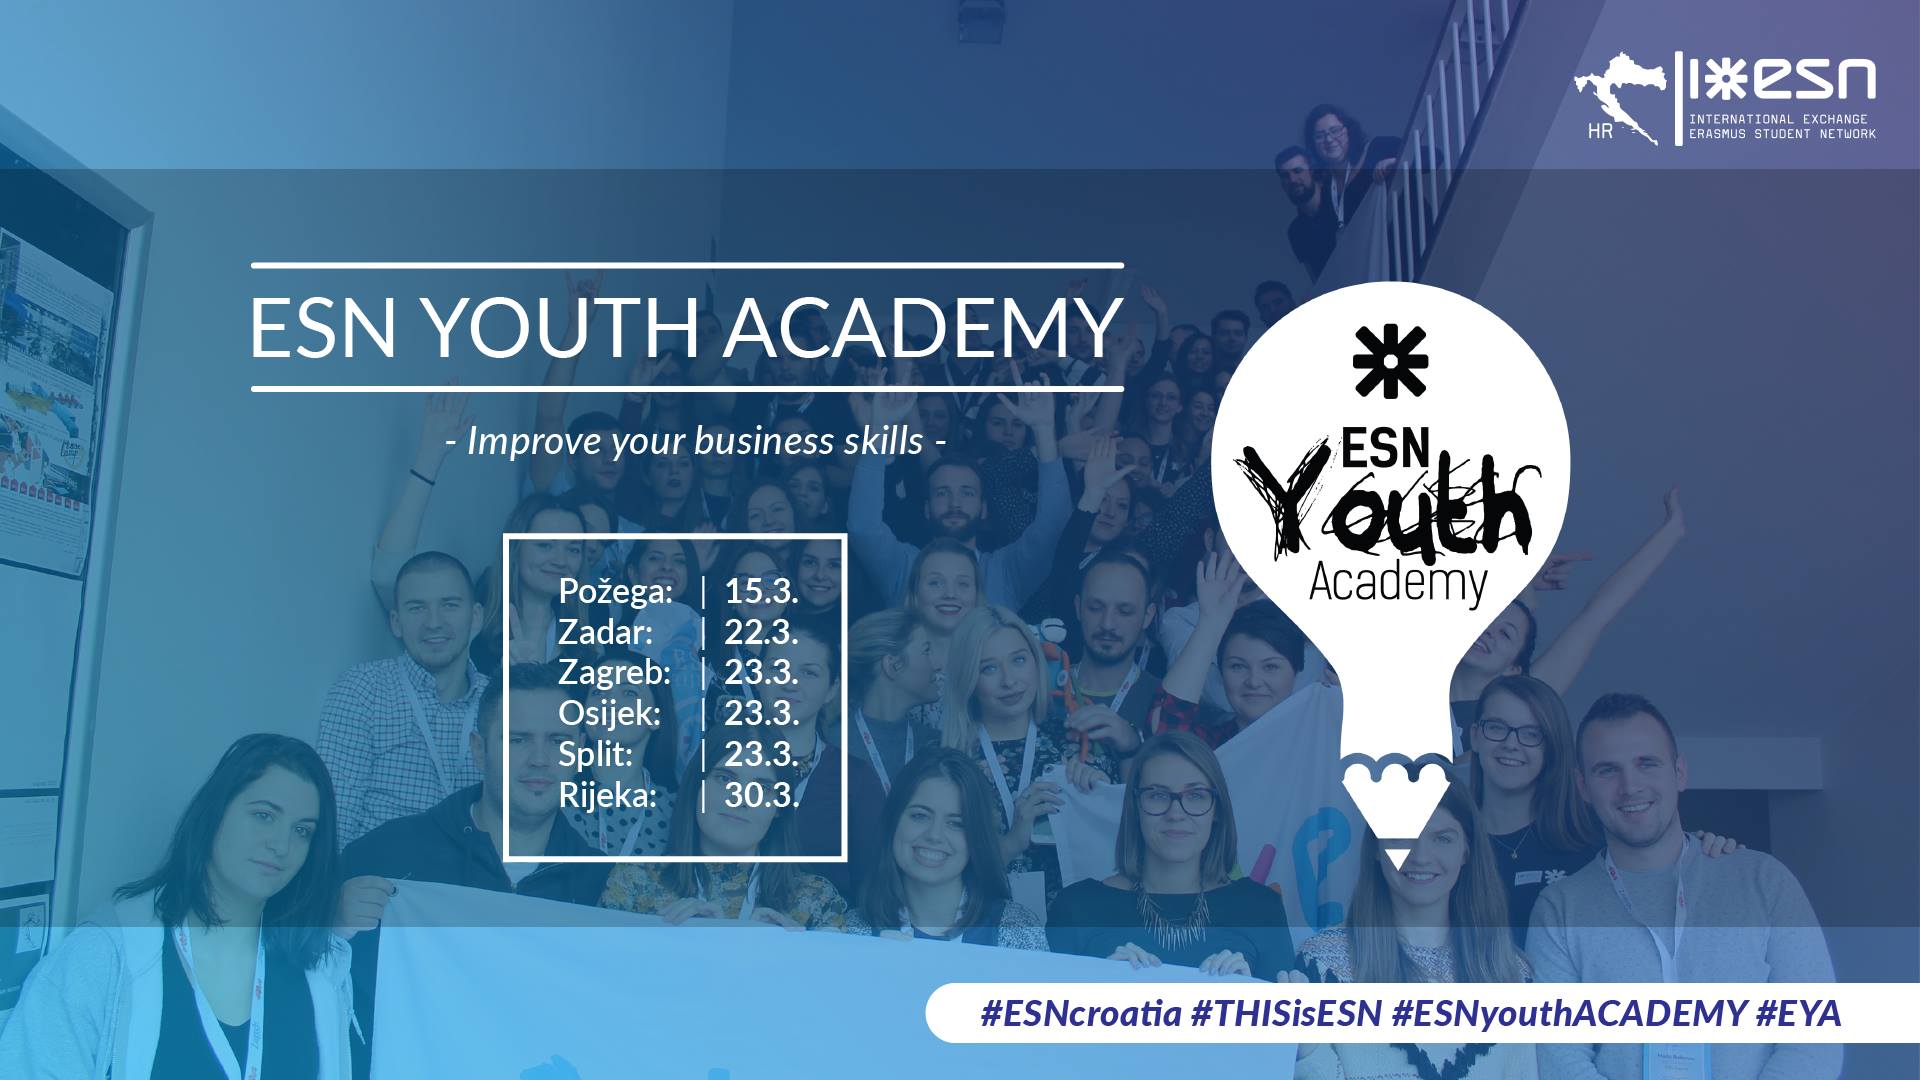 ESN Youth Academy - za poslovne vještine koje niste stekli tijekom studija - Slika 1